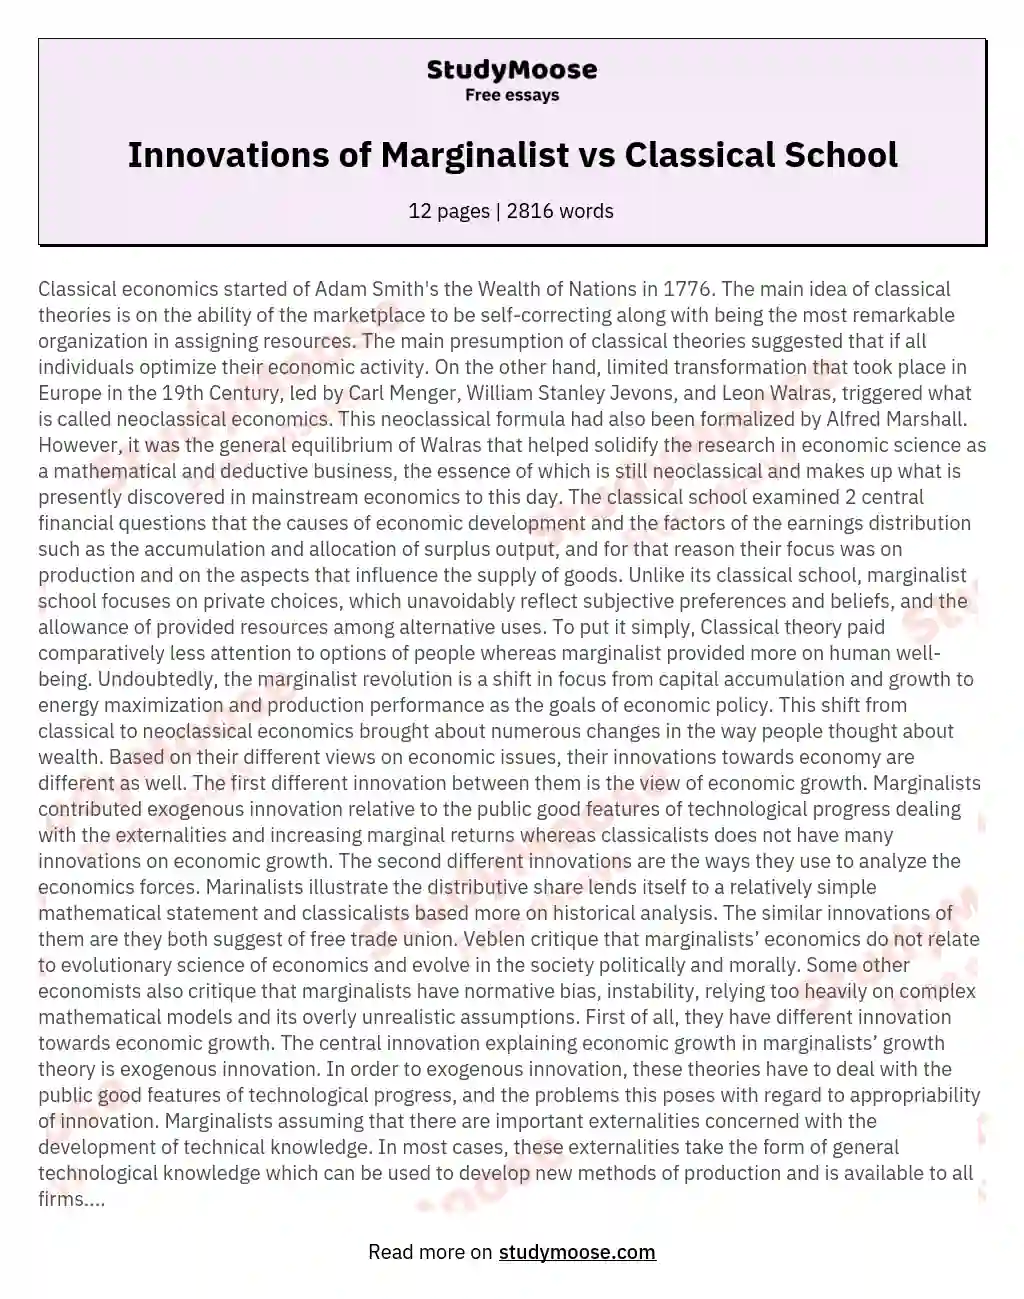 Innovations of Marginalist vs Classical School essay